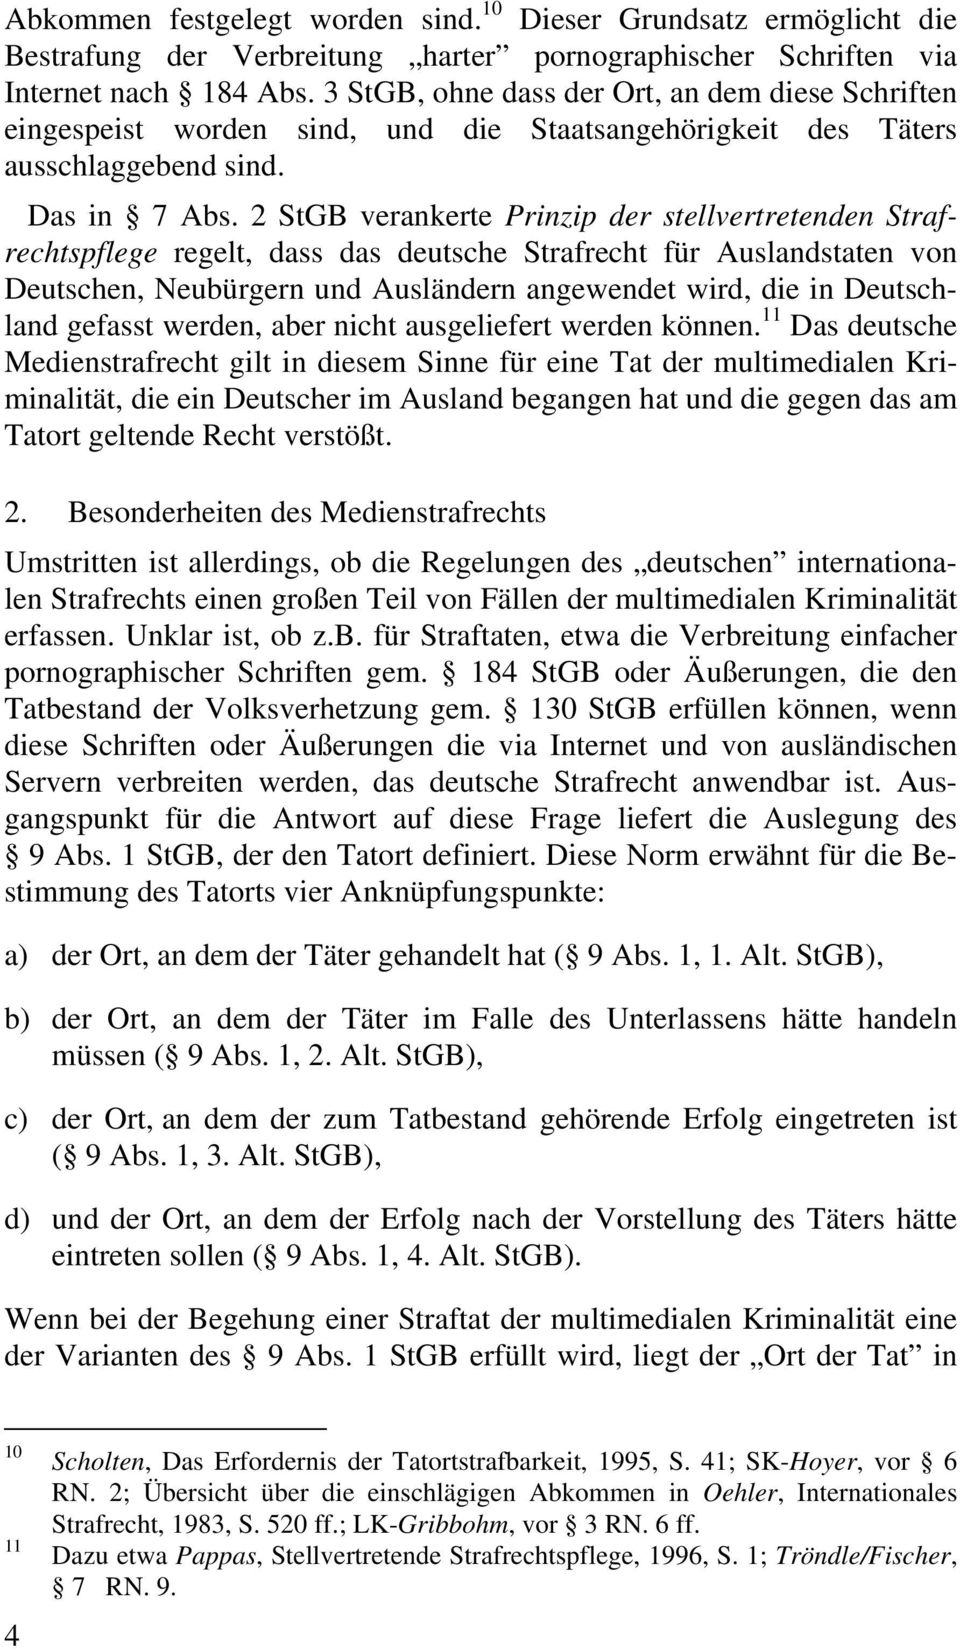 2 StGB verankerte Prinzip der stellvertretenden Strafrechtspflege regelt, dass das deutsche Strafrecht für Auslandstaten von Deutschen, Neubürgern und Ausländern angewendet wird, die in Deutschland